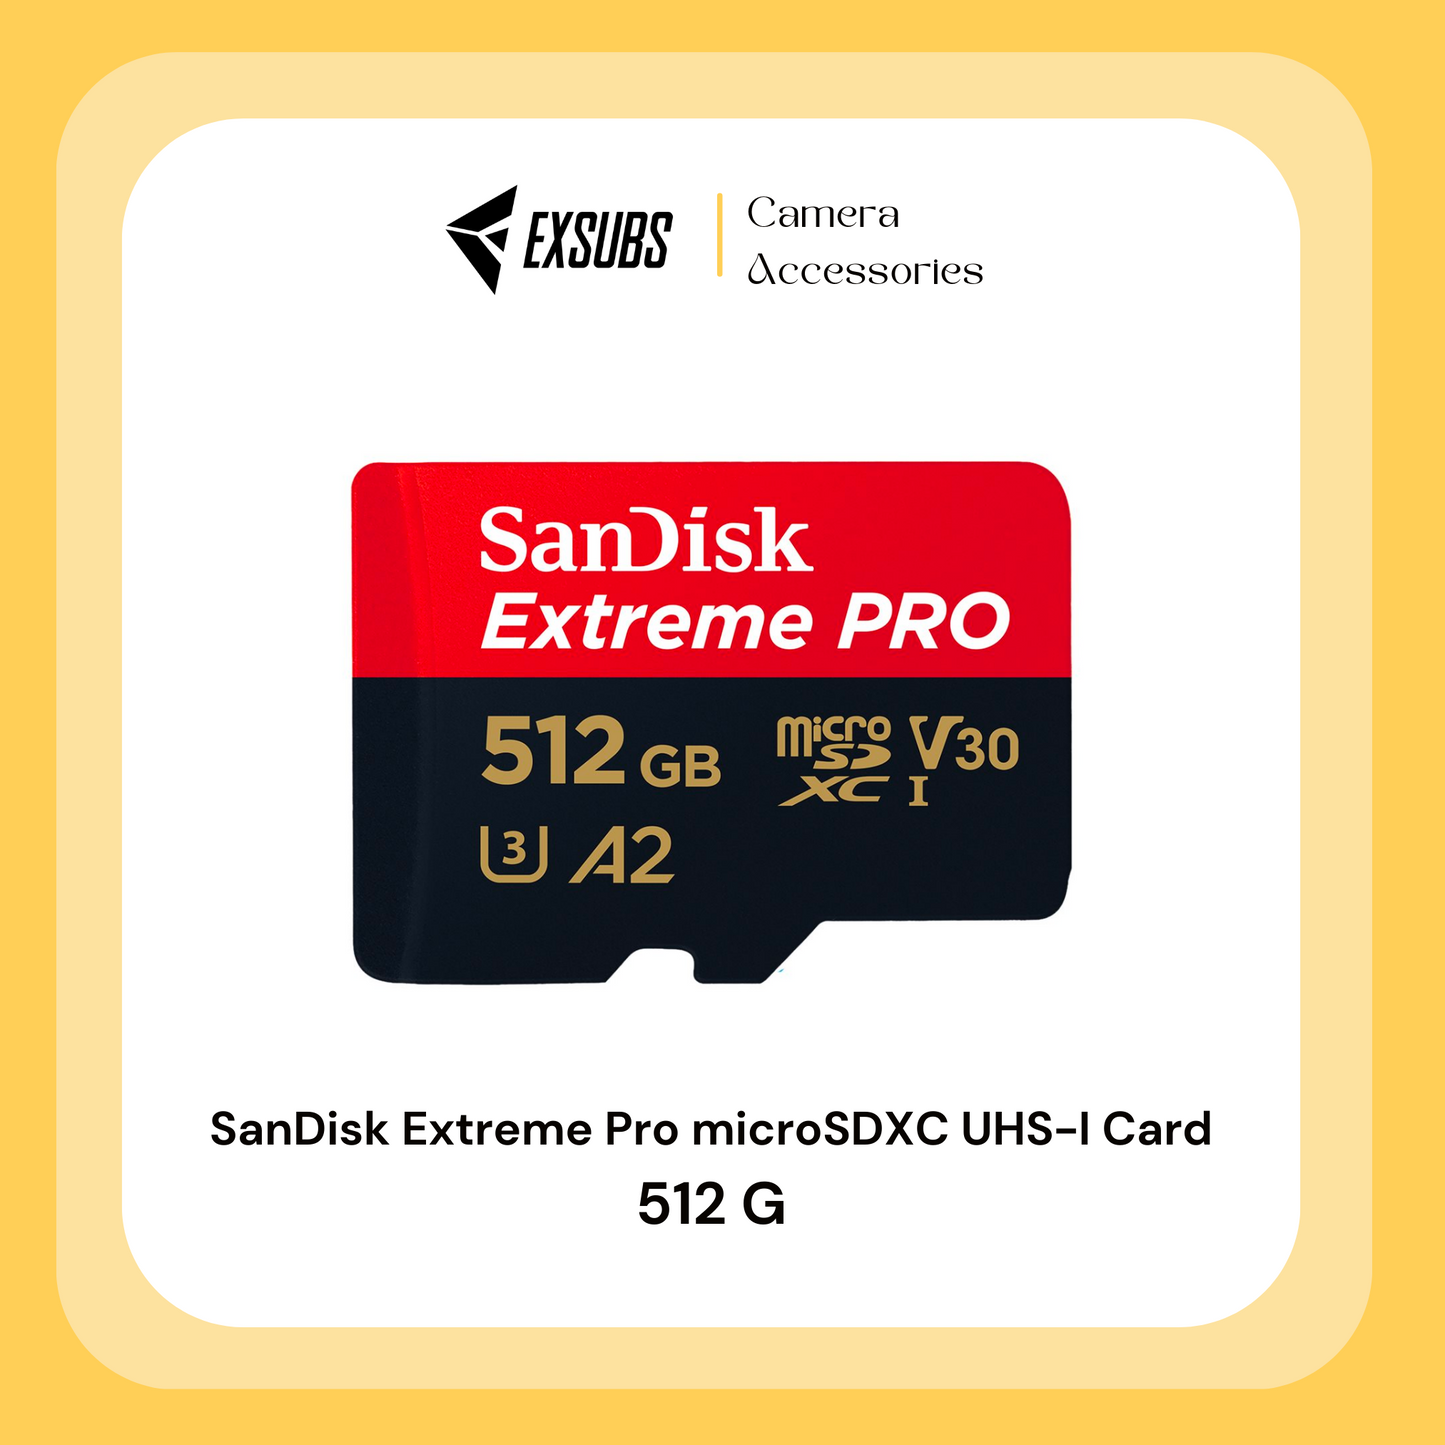 SanDisk Extreme Pro microSDXC UHS-I Card